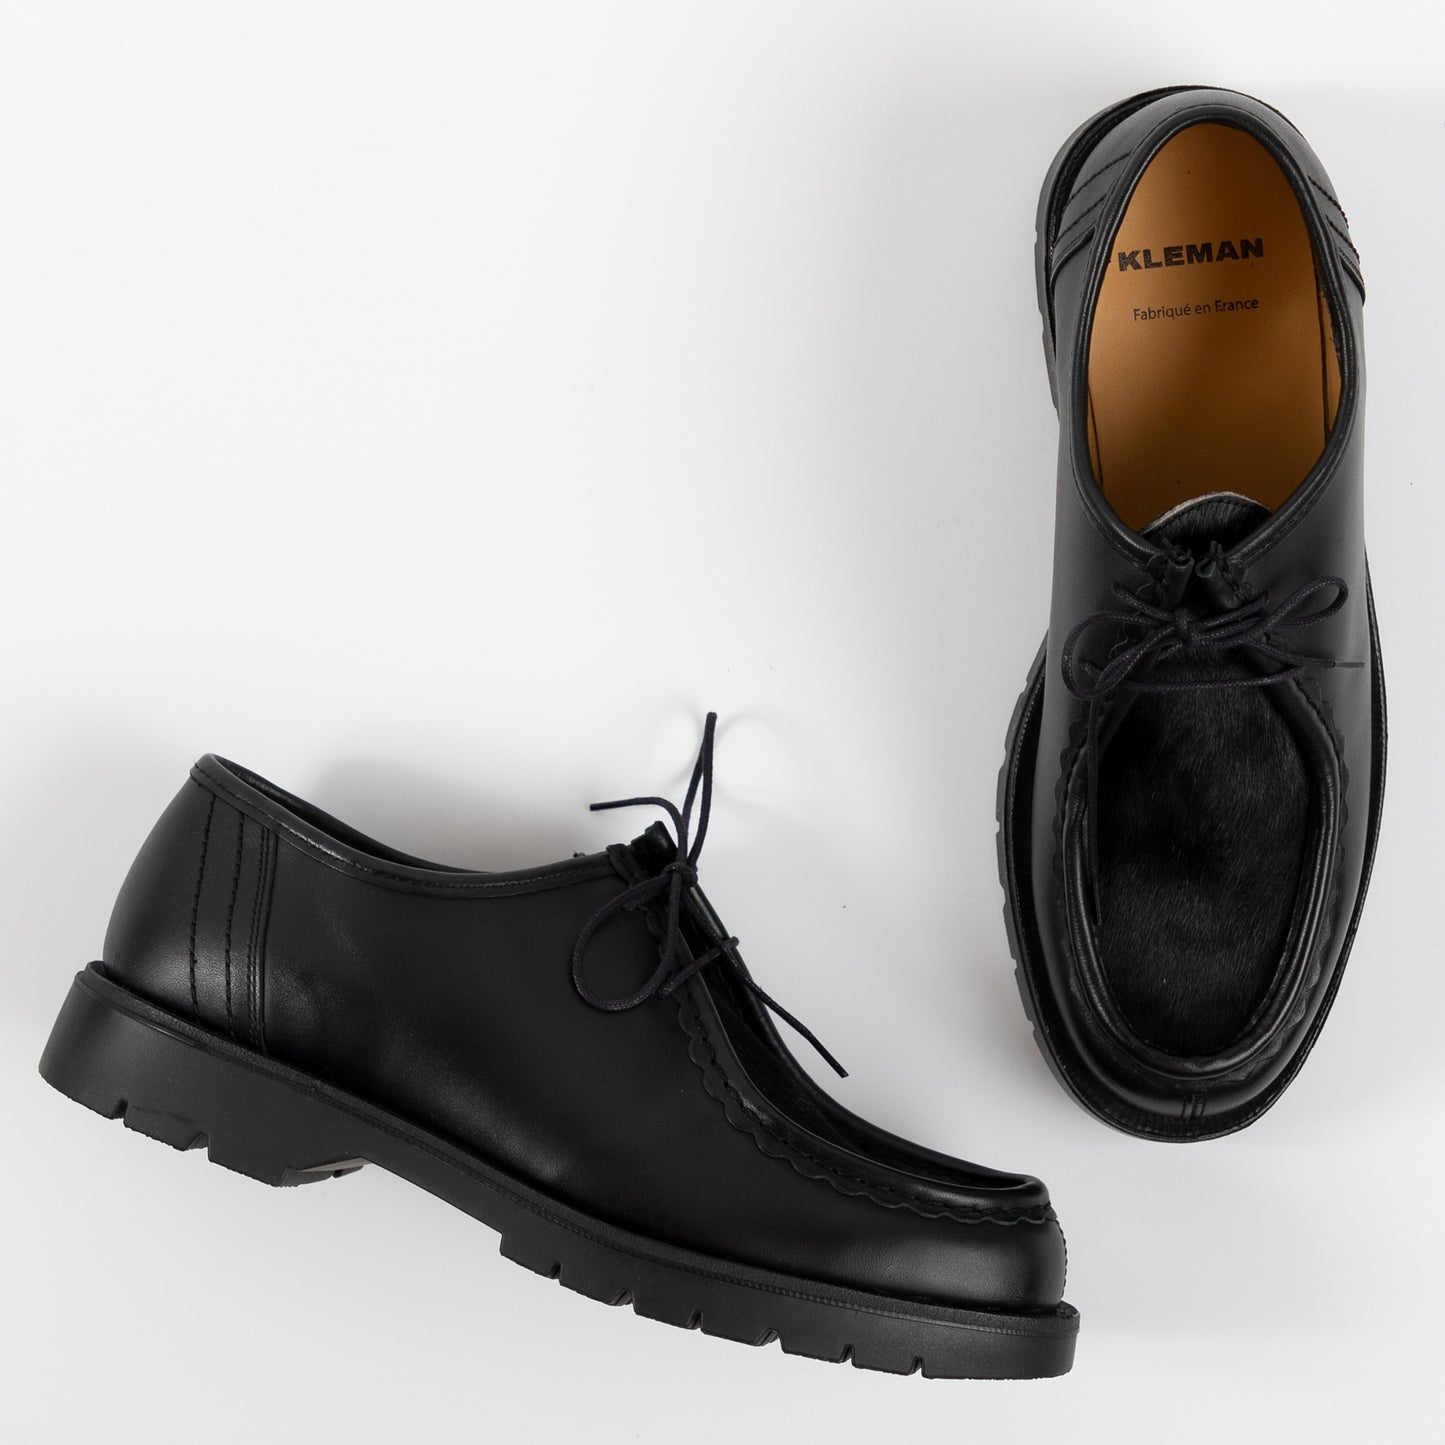 Kleman Padrini Derby Footwear Shoe Workwear Lace Up Black